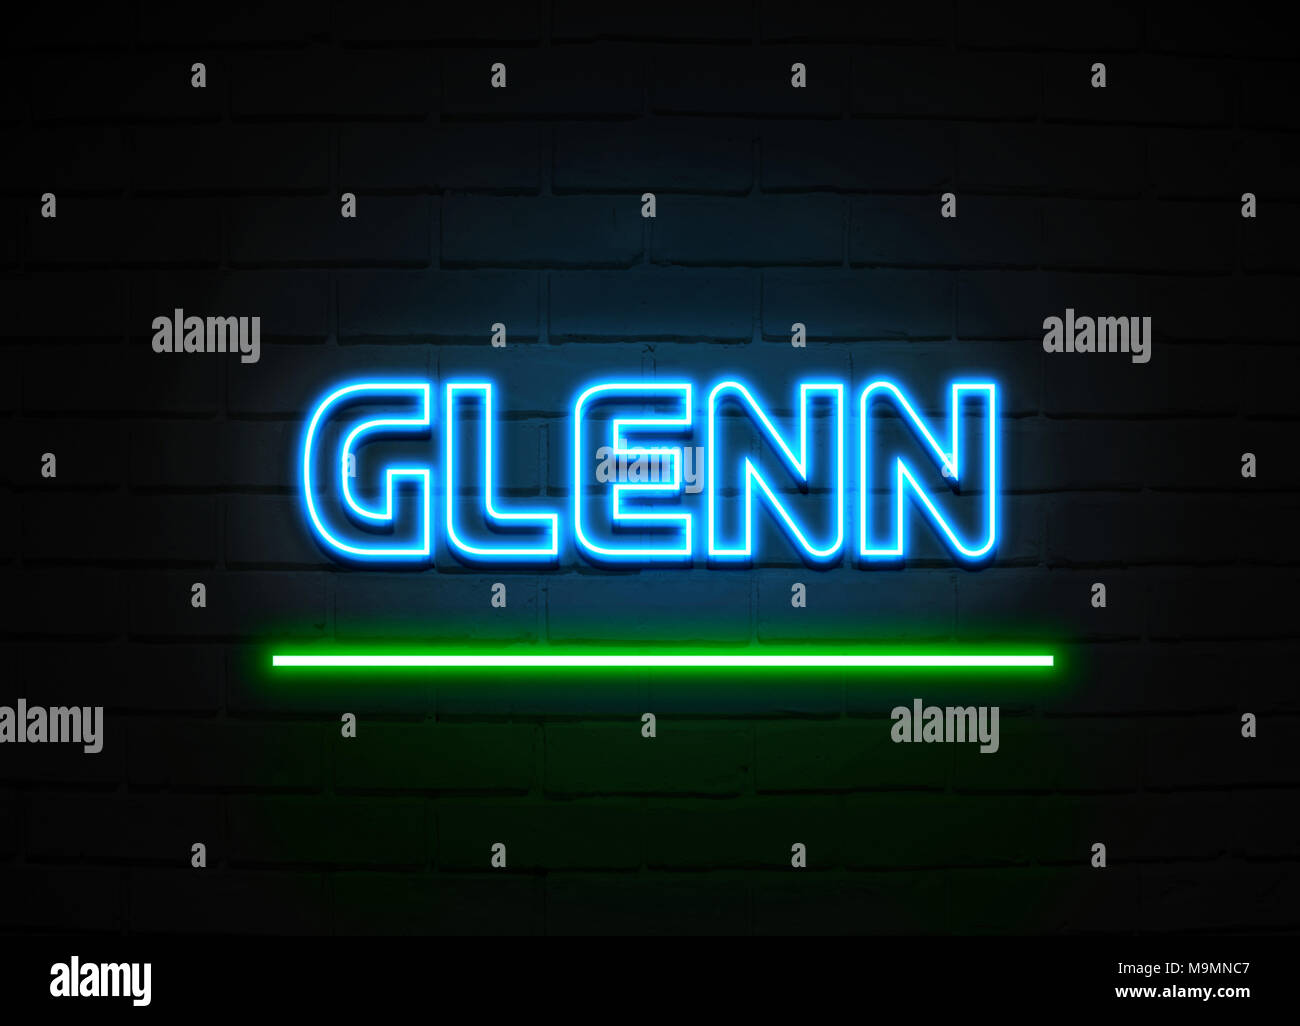 Glenn Leuchtreklame - glühende Leuchtreklame auf brickwall Wand - 3D-Royalty Free Stock Illustration dargestellt. Stockfoto